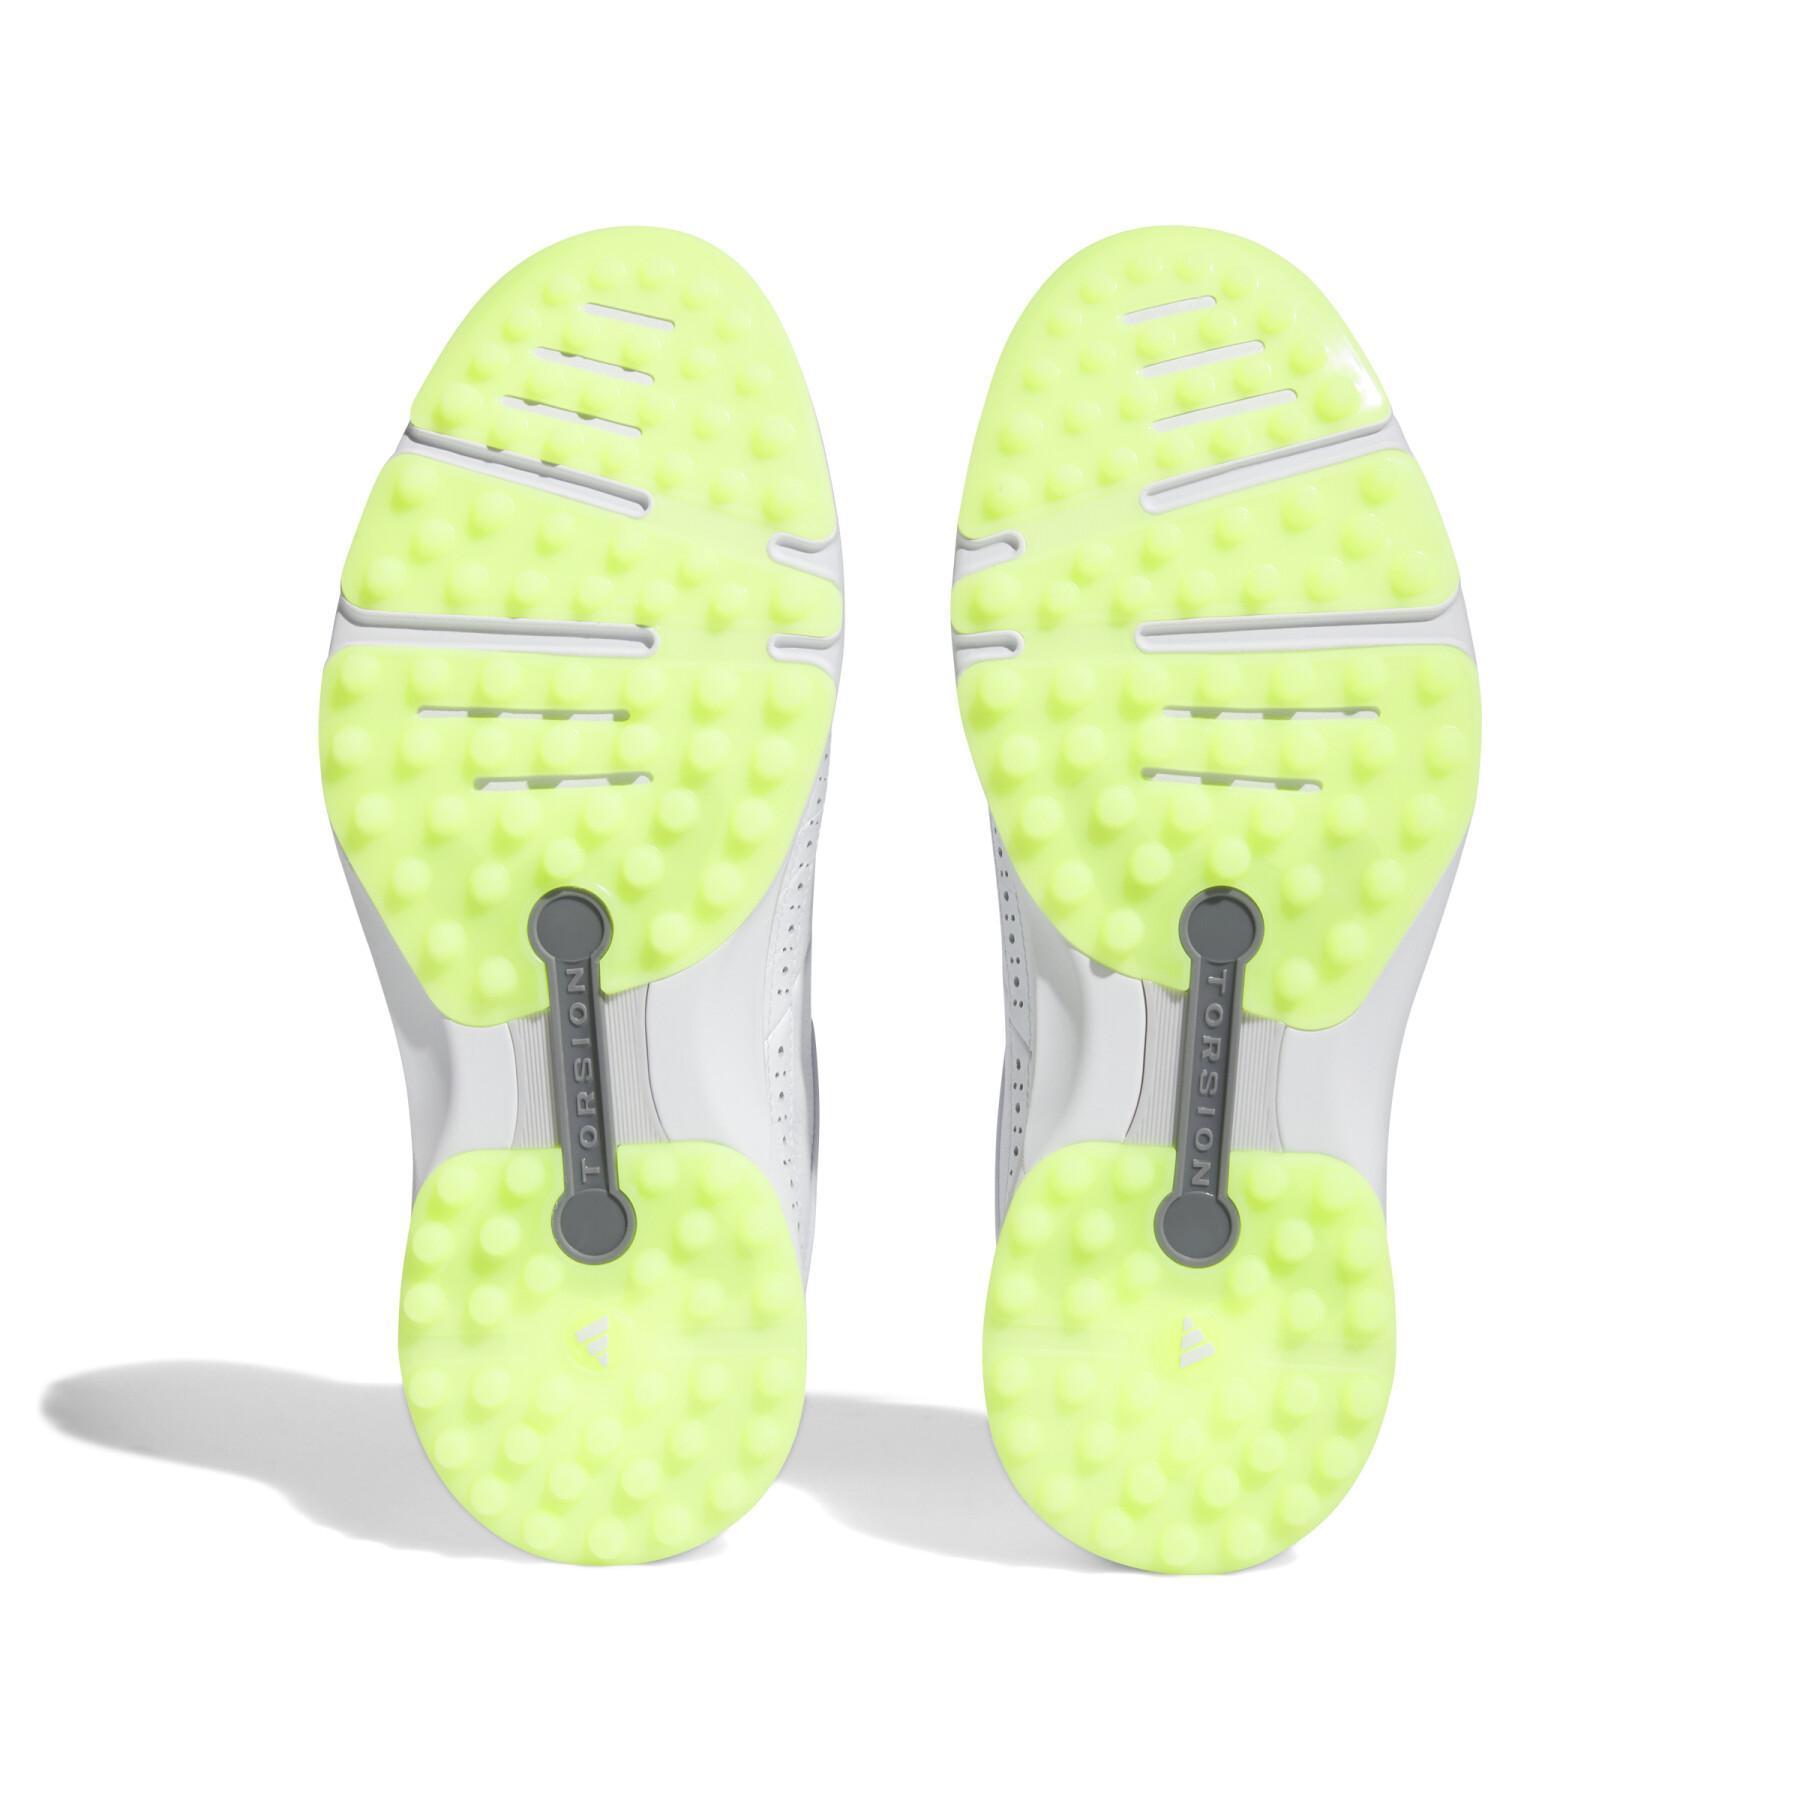 Spikeless golf shoes adidas MC80 Spikeless